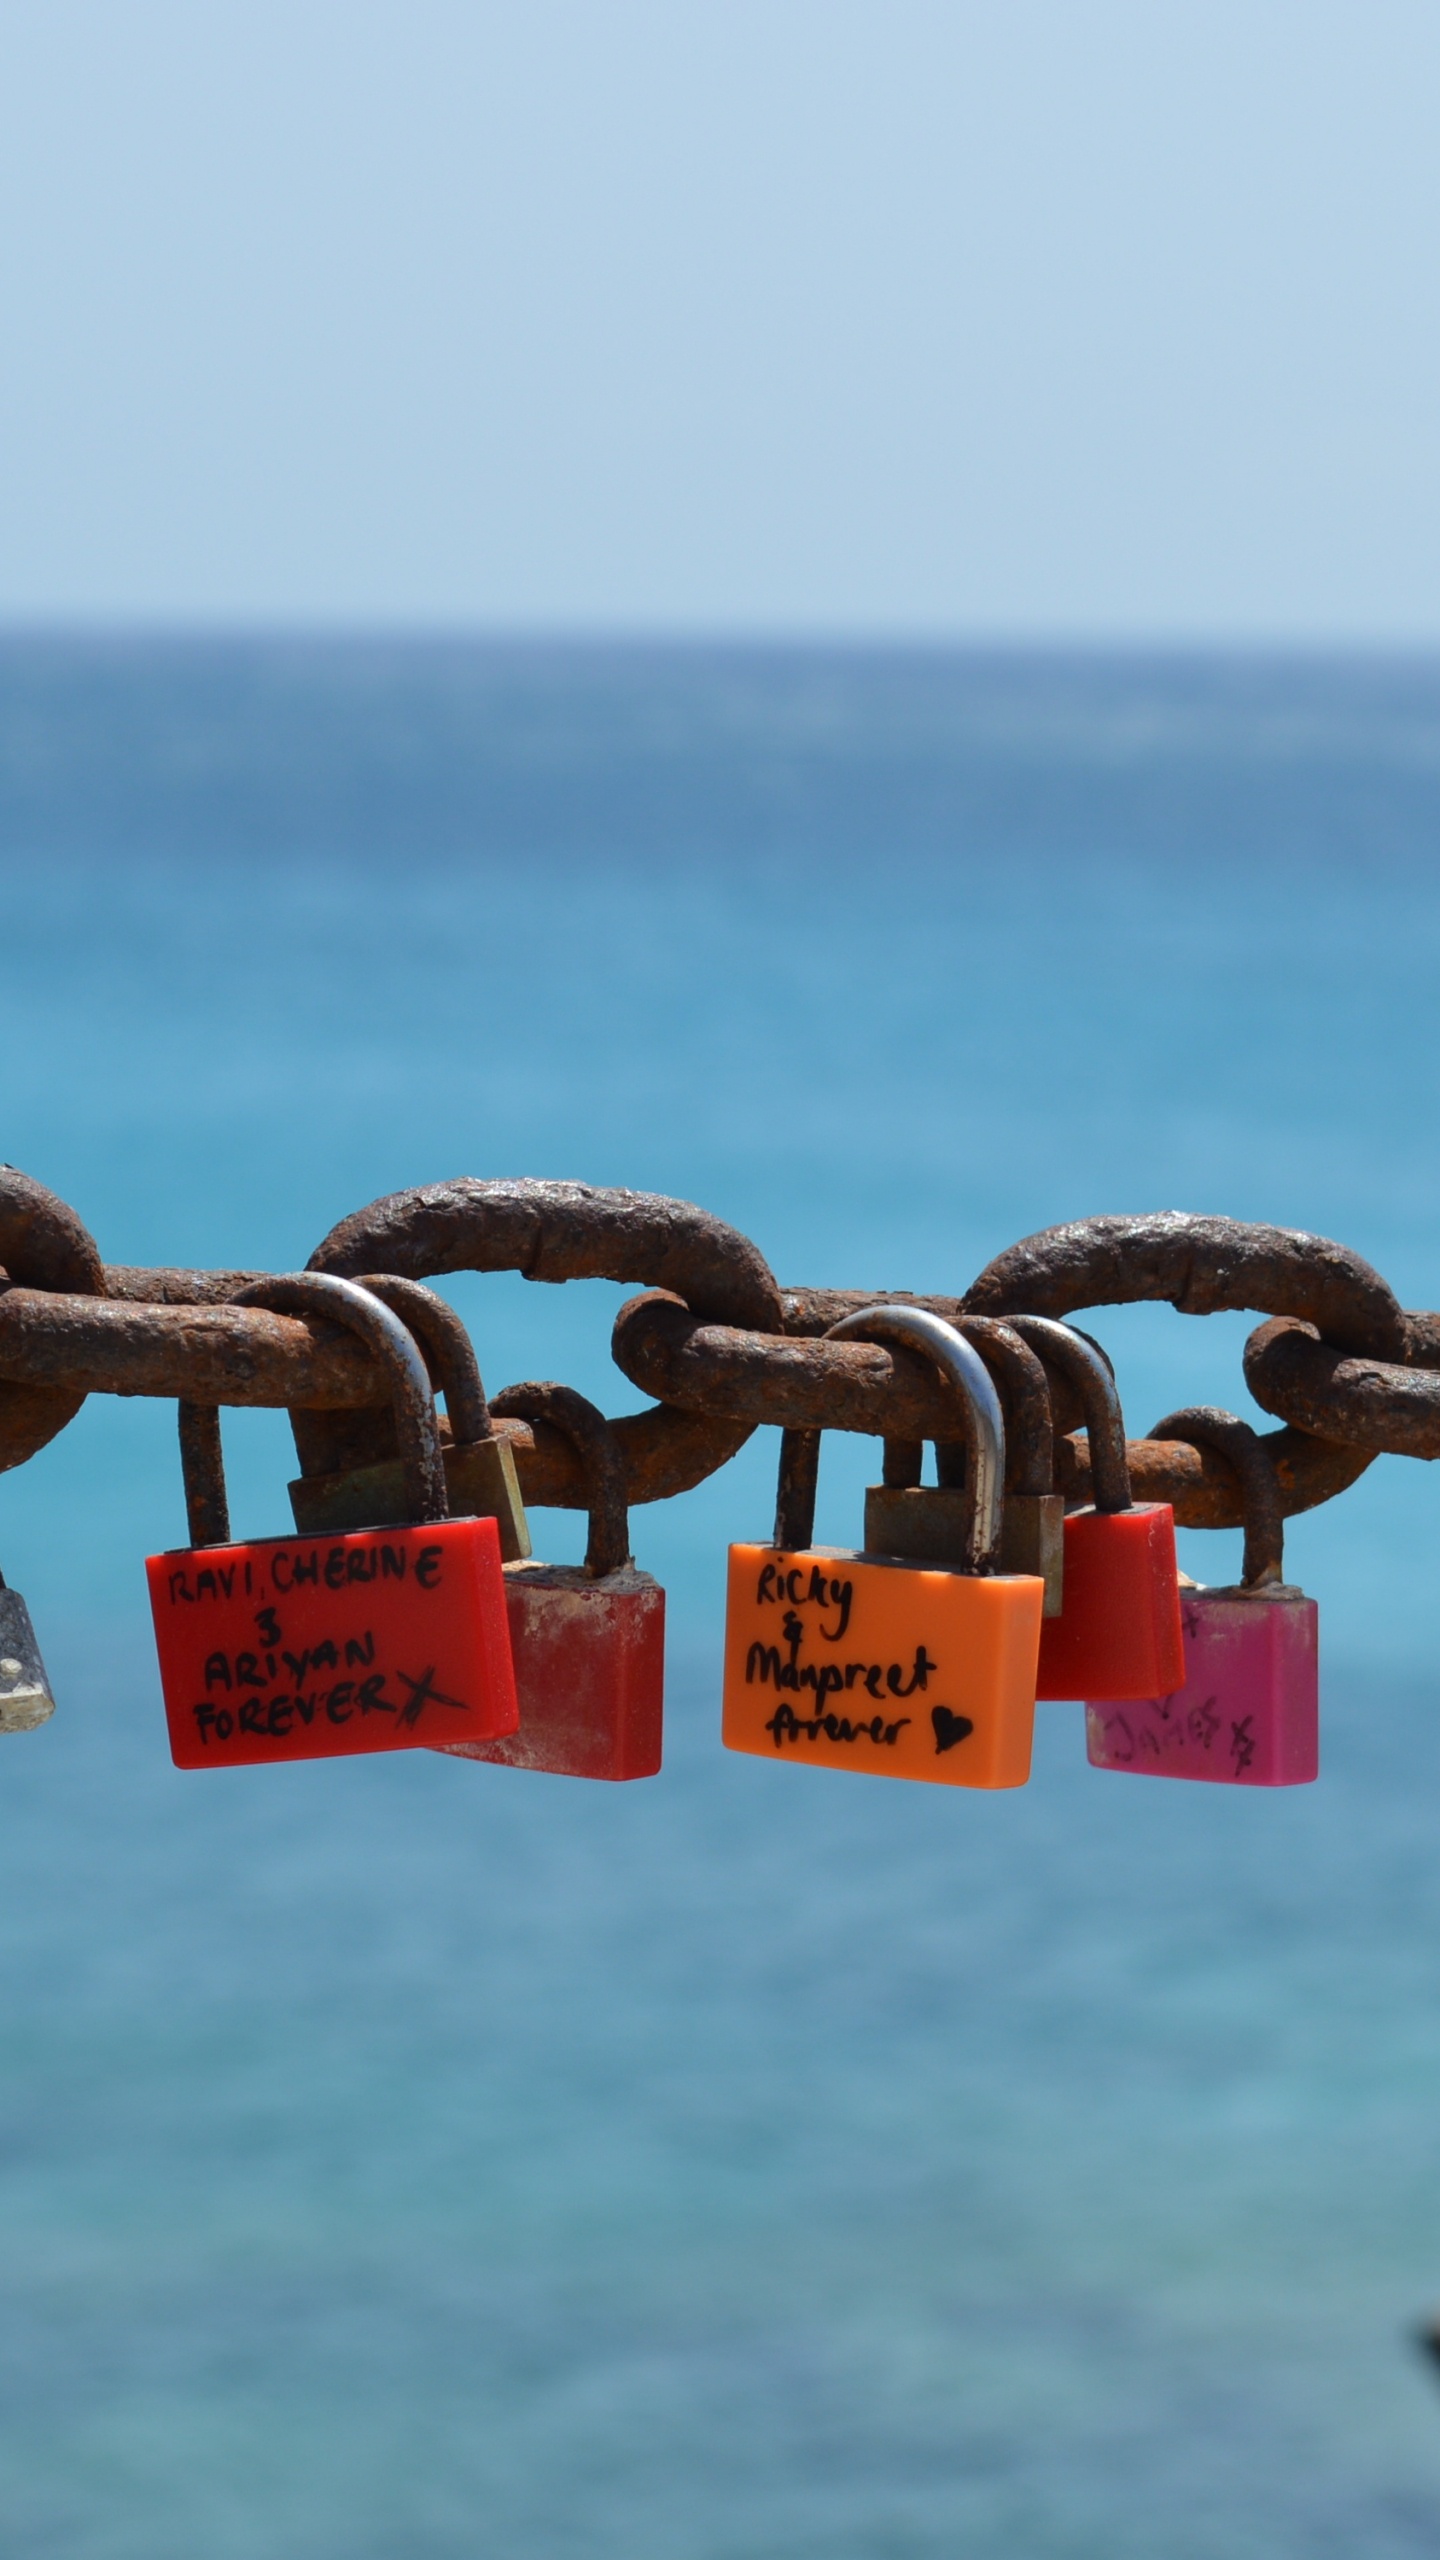 挂锁, 锁定, 锁和钥匙, 大海, 海洋 壁纸 1440x2560 允许